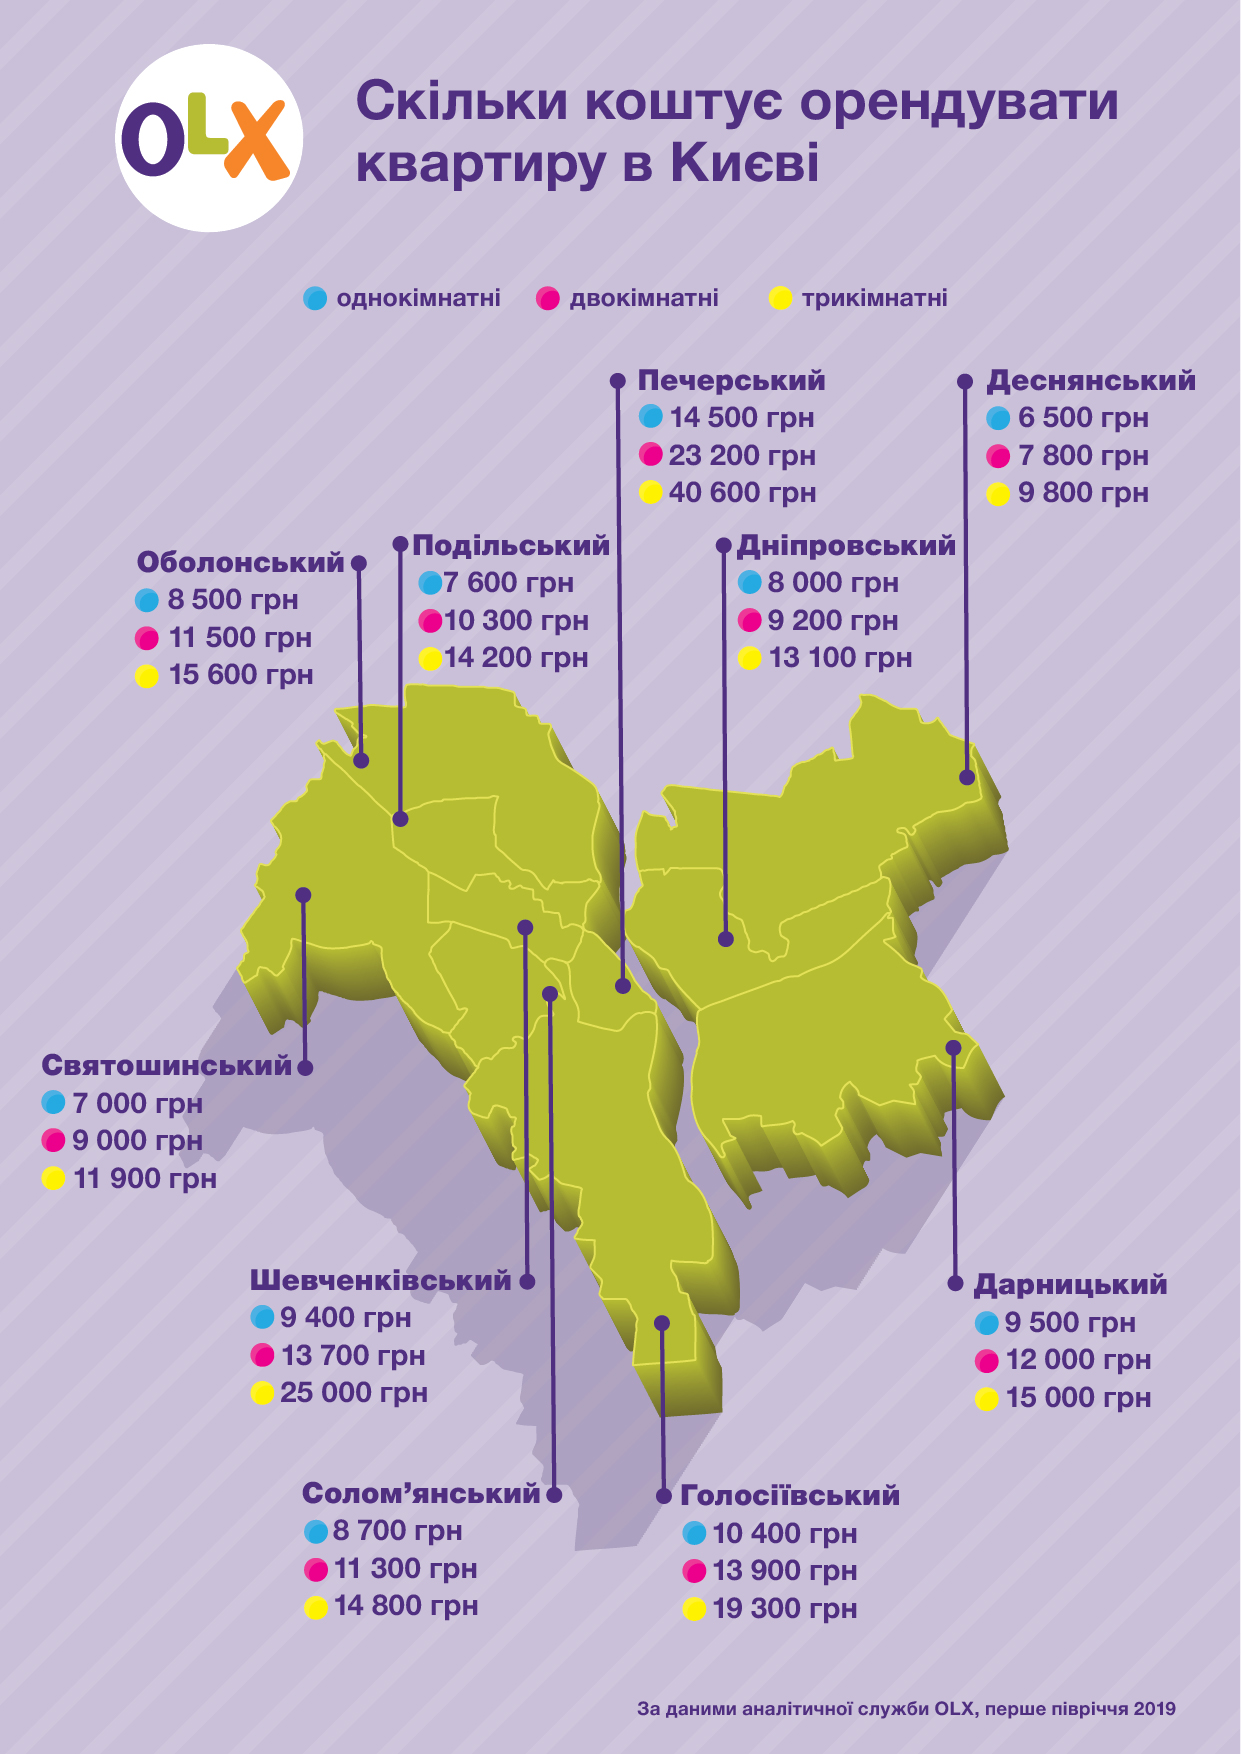 OLX_ Скільки коштує орендувати квартиру в Києві